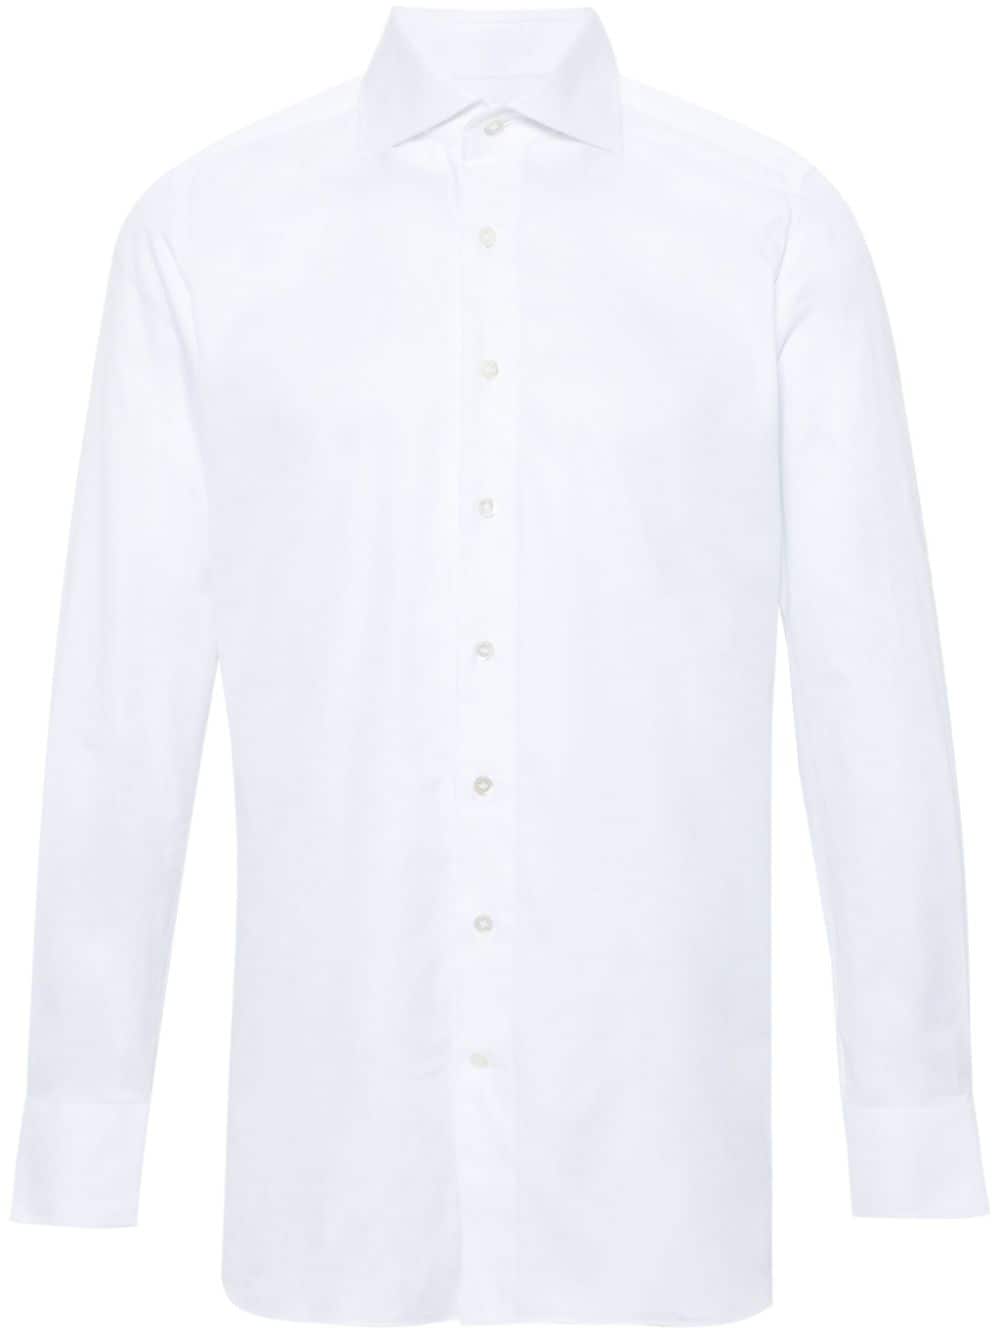 100HANDS long-sleeve cotton shirt